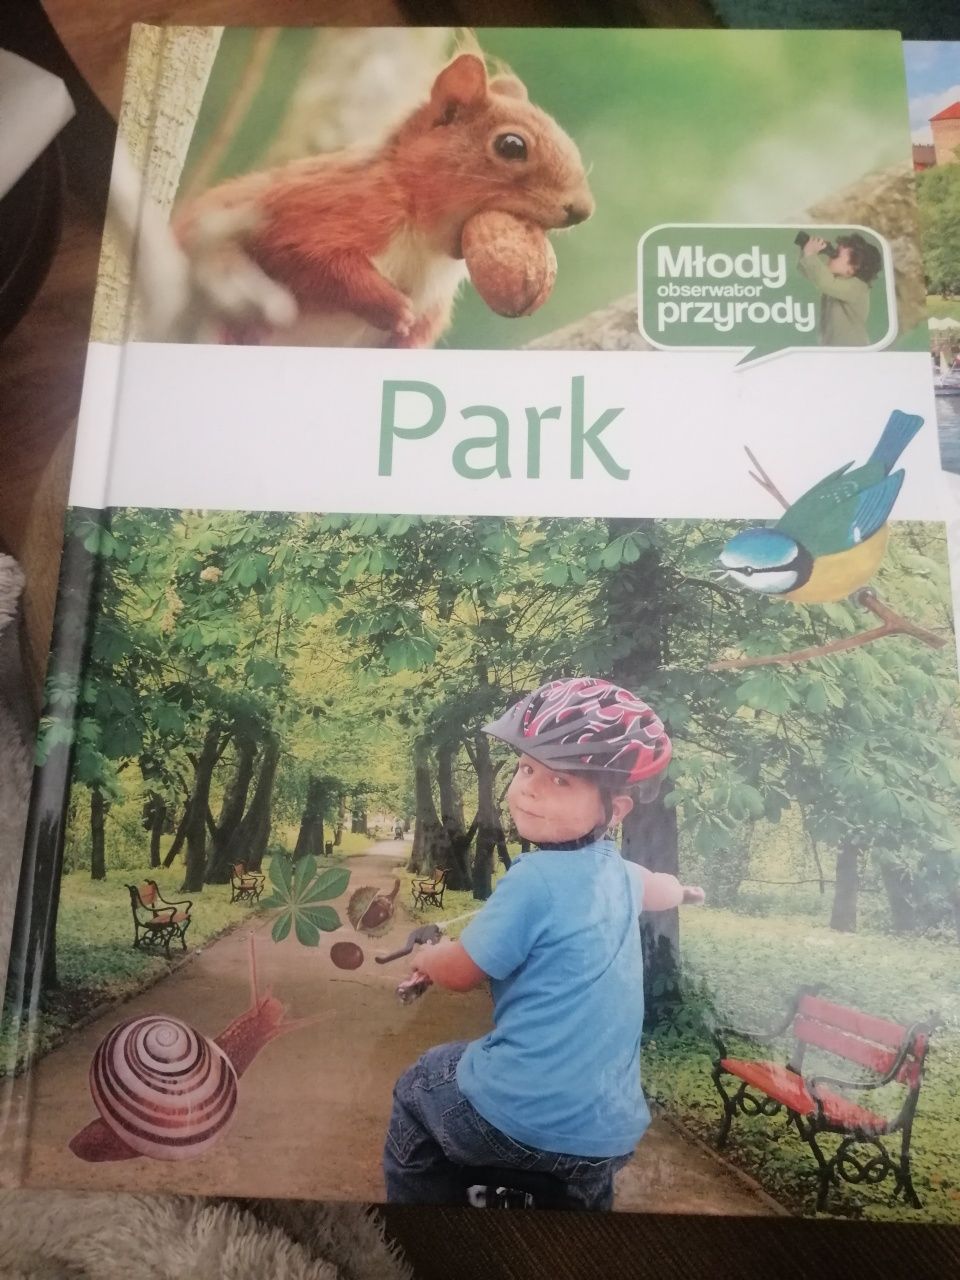 Park książka dla dzieci młody obserwator przyrody